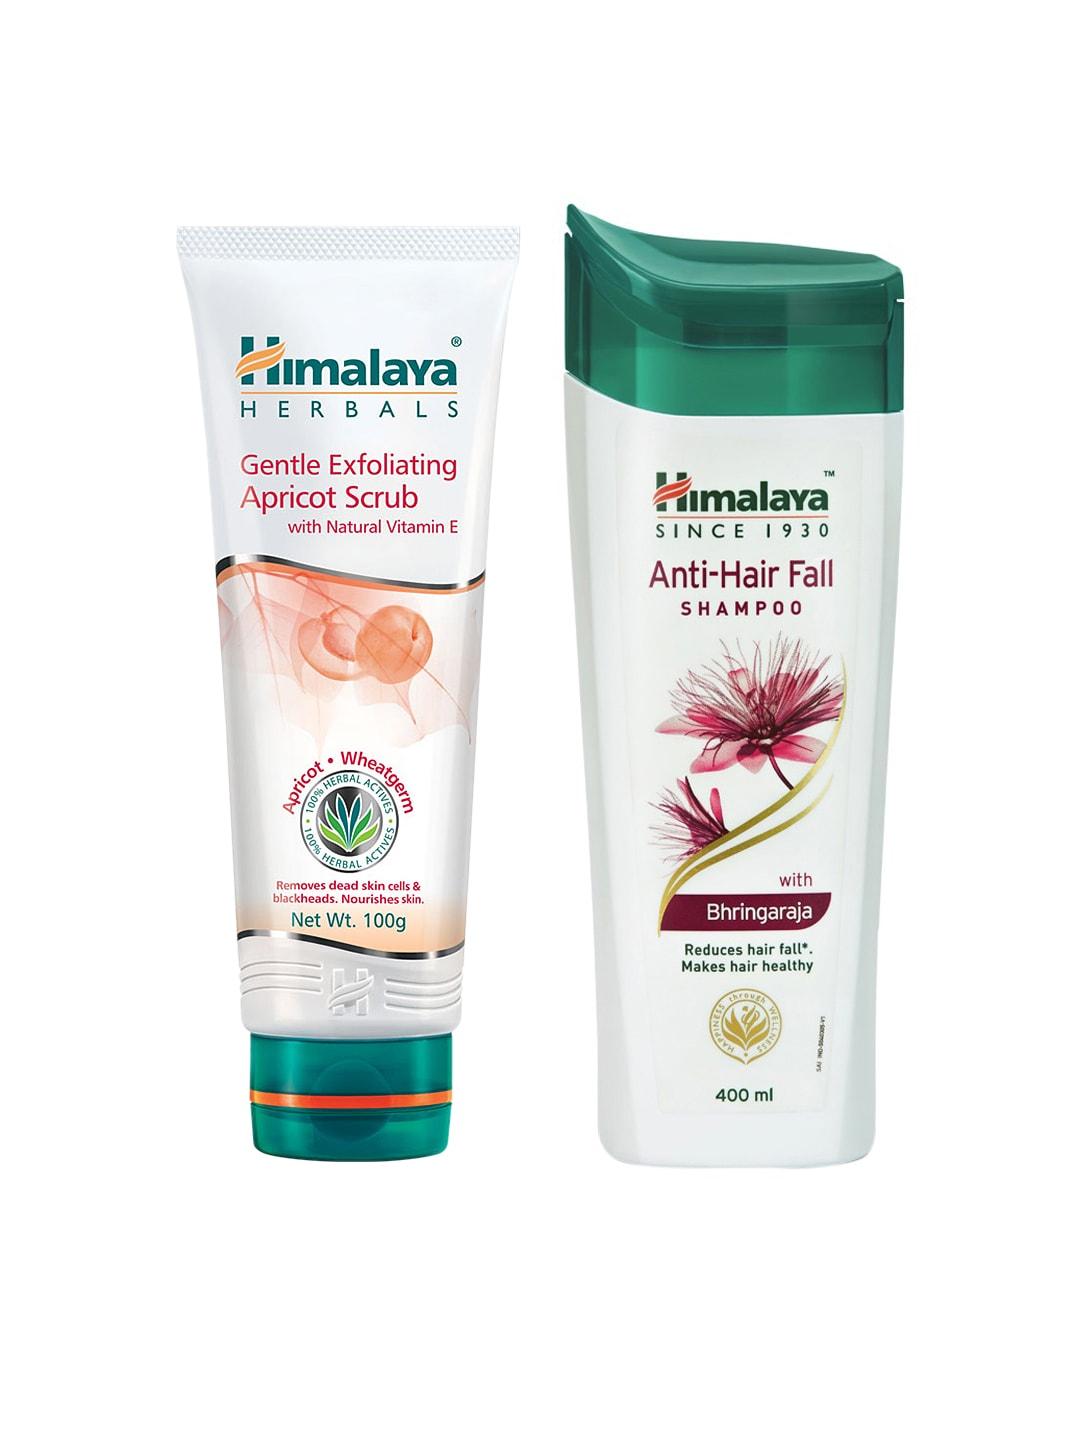 Himalaya Set of Anti-Hair Fall Shampoo & Apricot Scrub